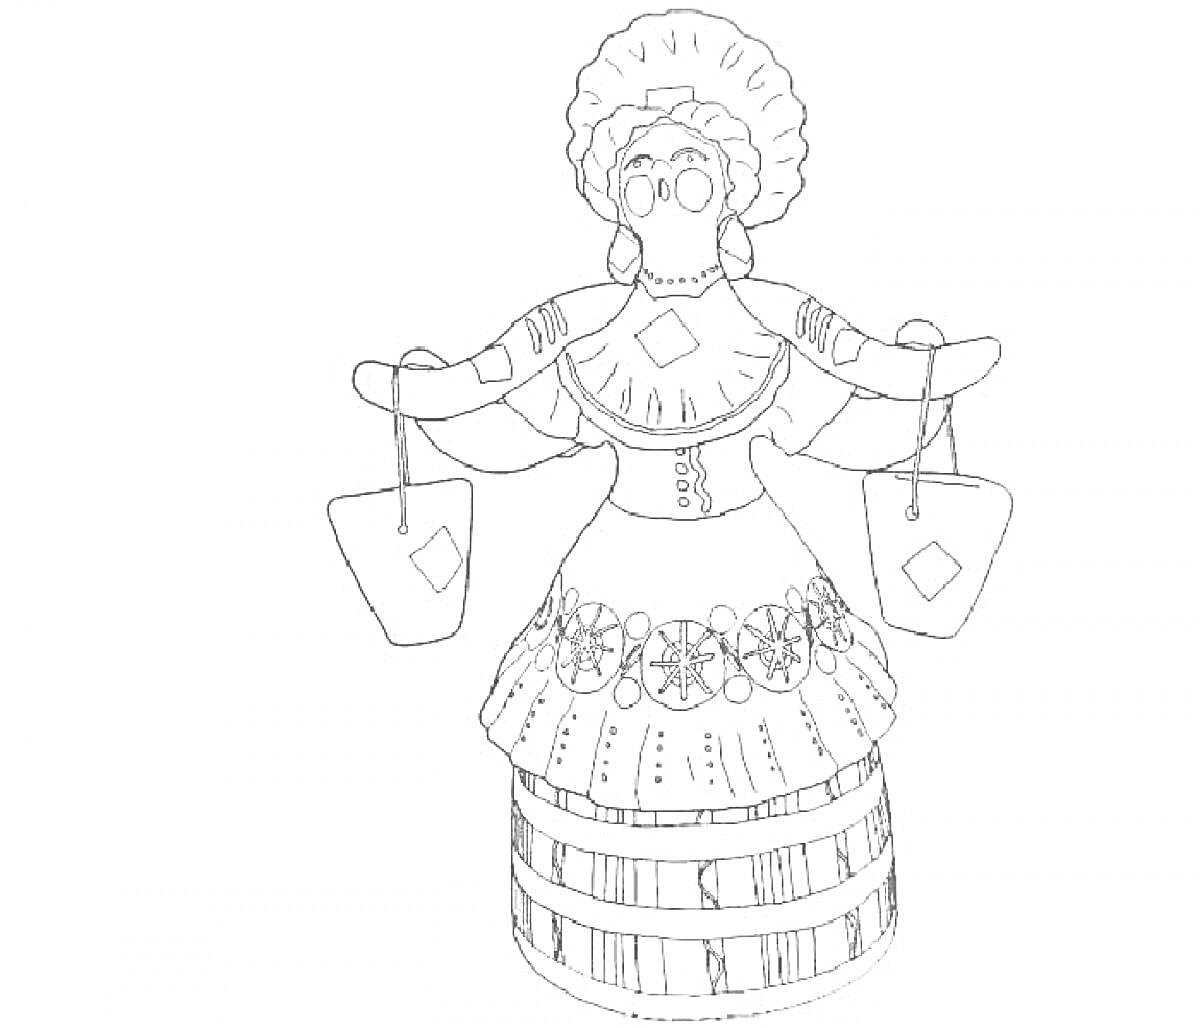 Раскраска Женщина в традиционном наряде с ведрами на коромысле, головной убор с оборками, юбка с узорами